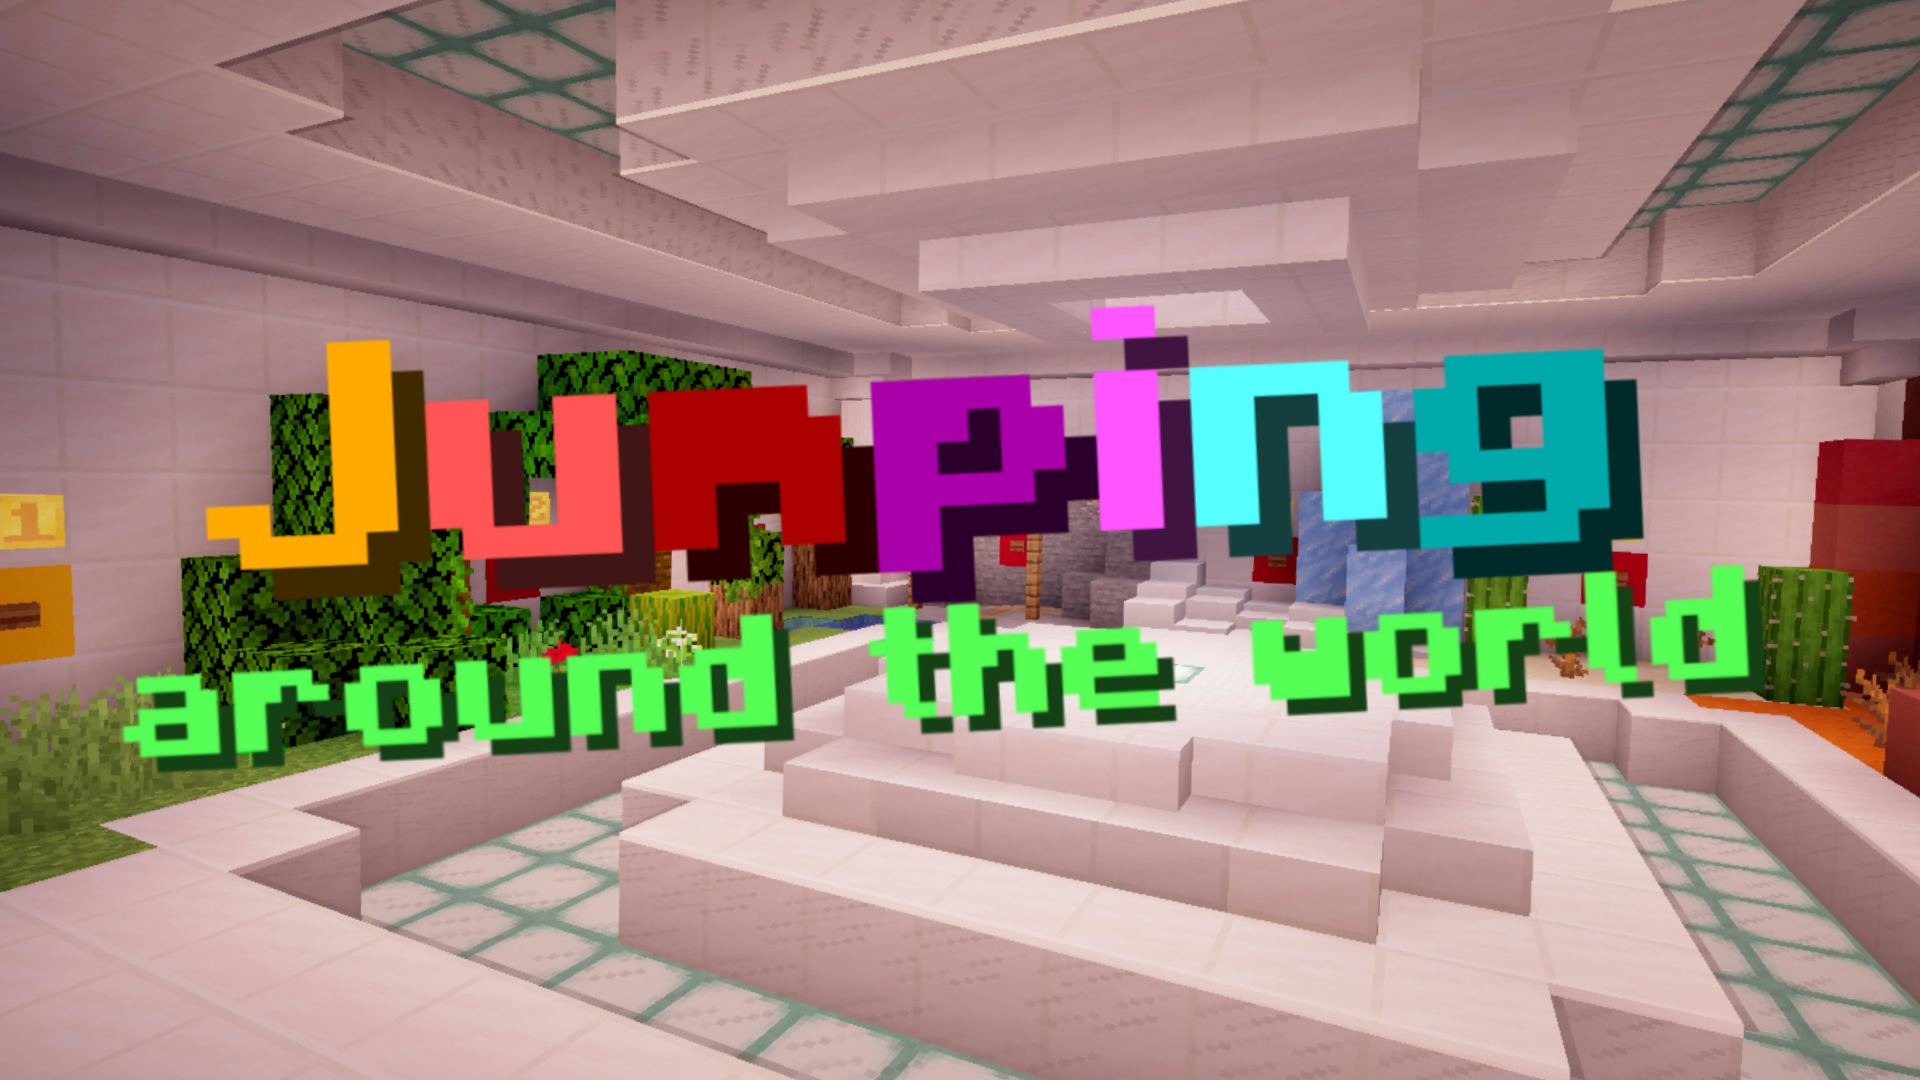 Скачать Jumping Around the World для Minecraft 1.13.2